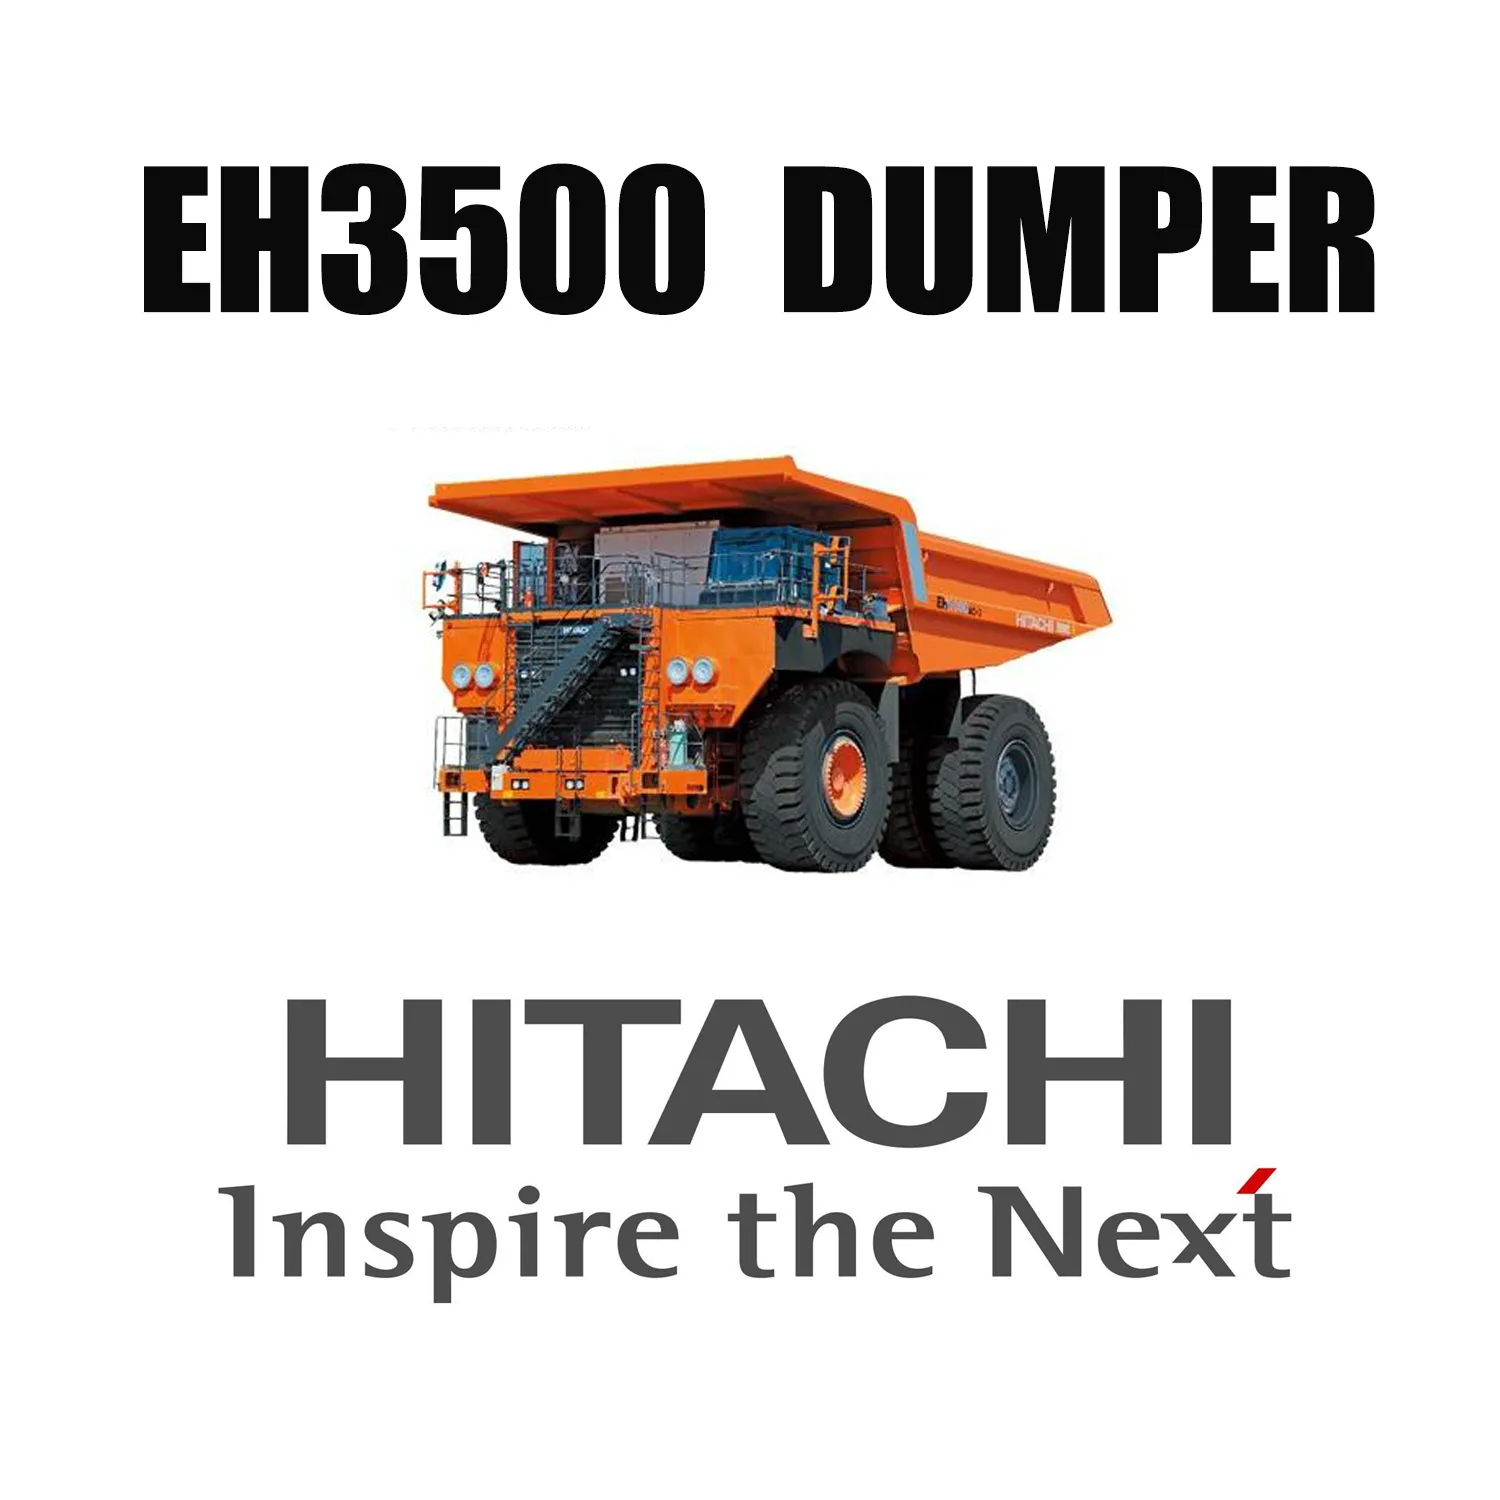 Pneus de camion tout-terrain 37.00R57 équipés de camions de transport HITACHI EH3500